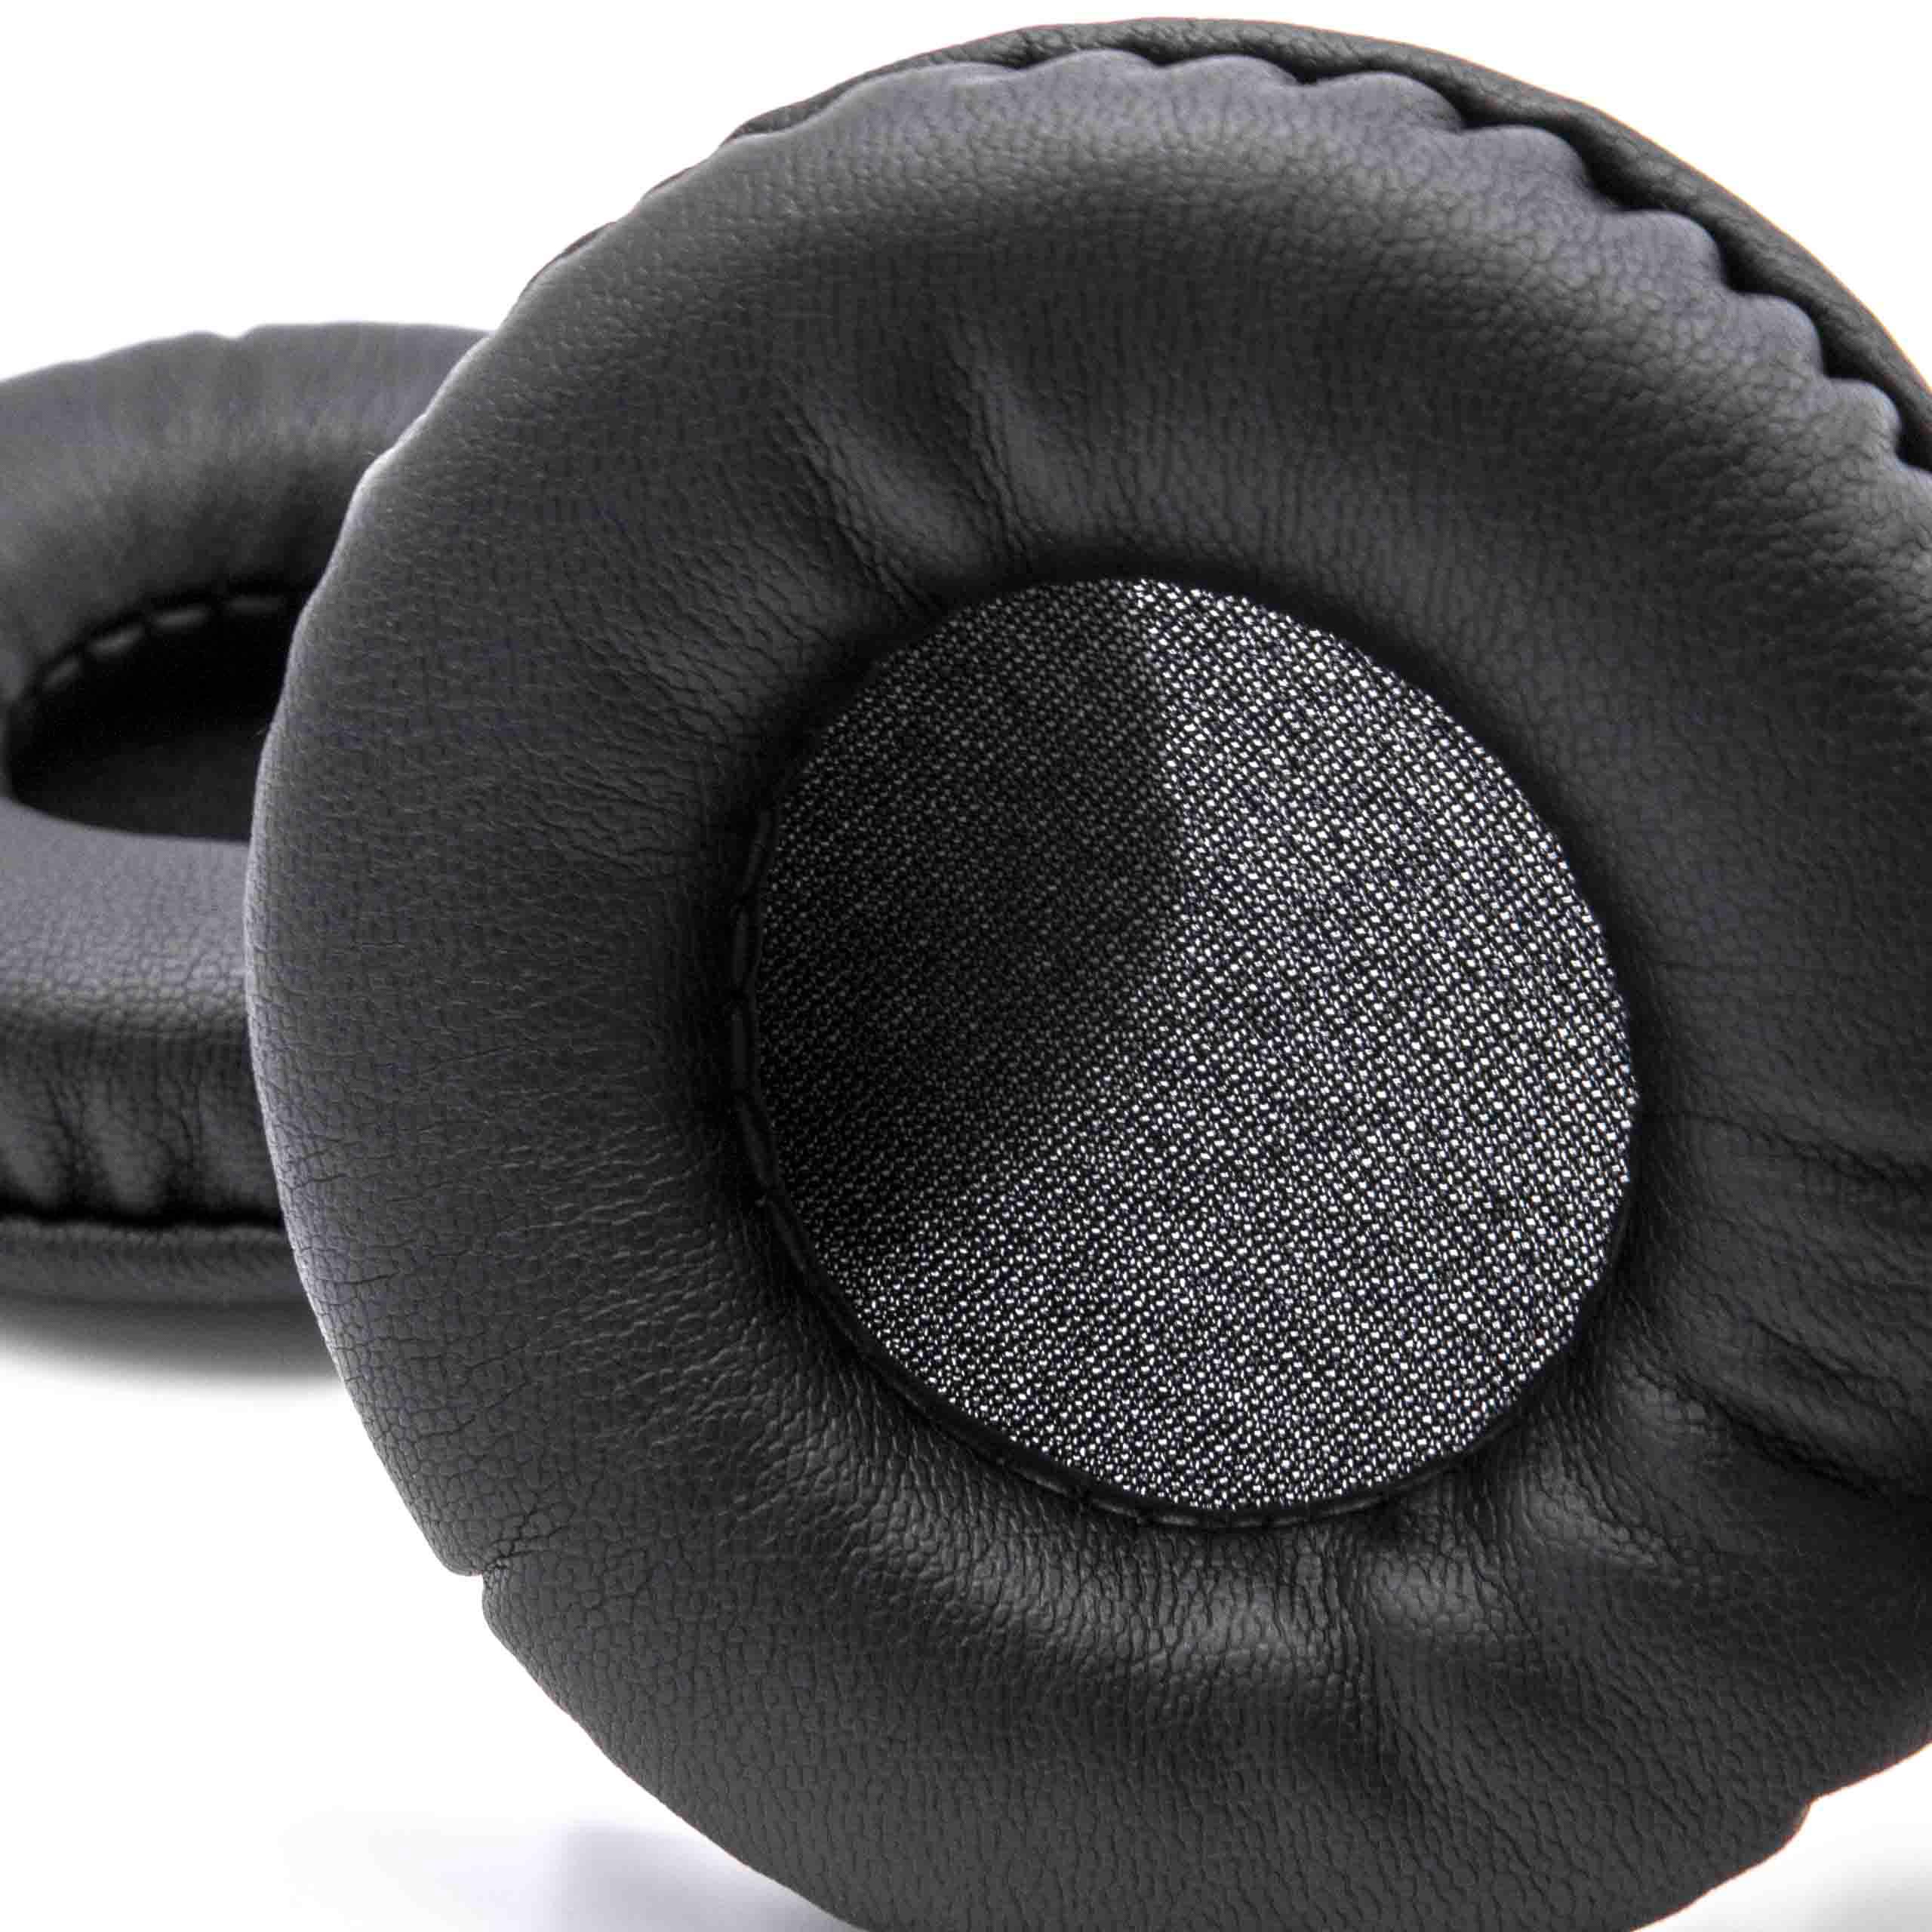 2x Poduszki do słuchawek K495 AKG - pady śr. 7,5 cm , czarny